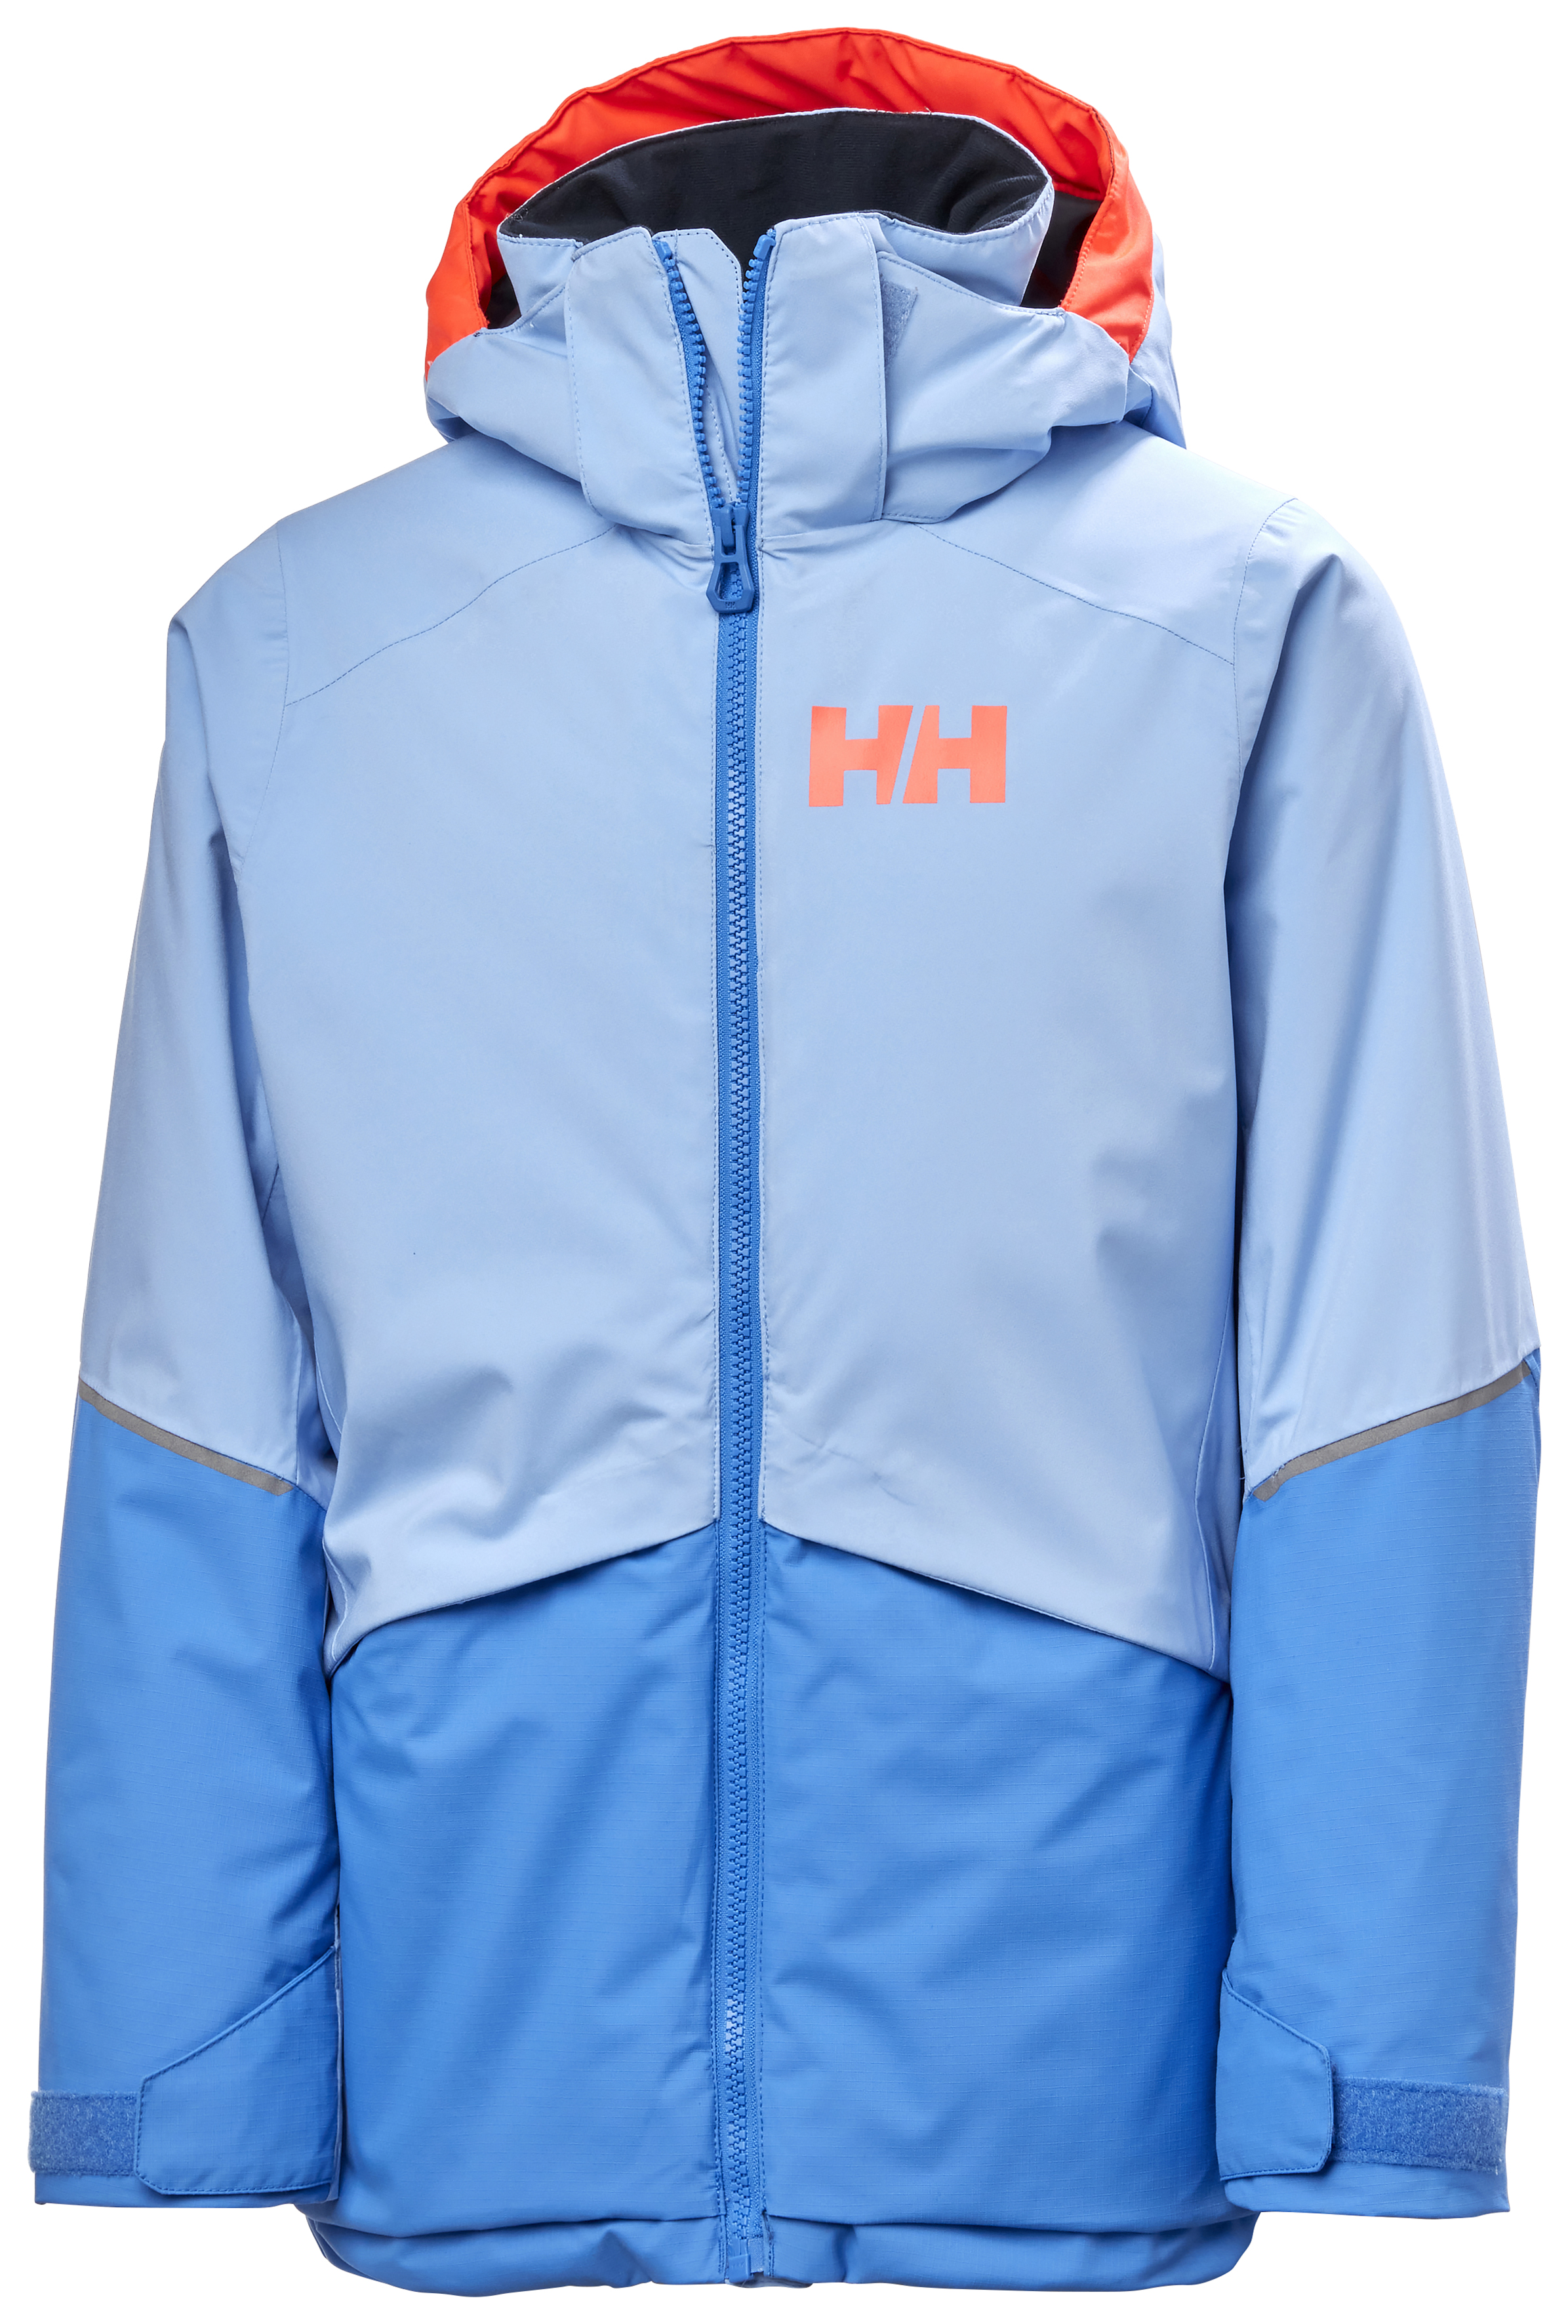 Helly-Hansen Junior Unisex Stripe Wind Jacket, Big Weather Gear